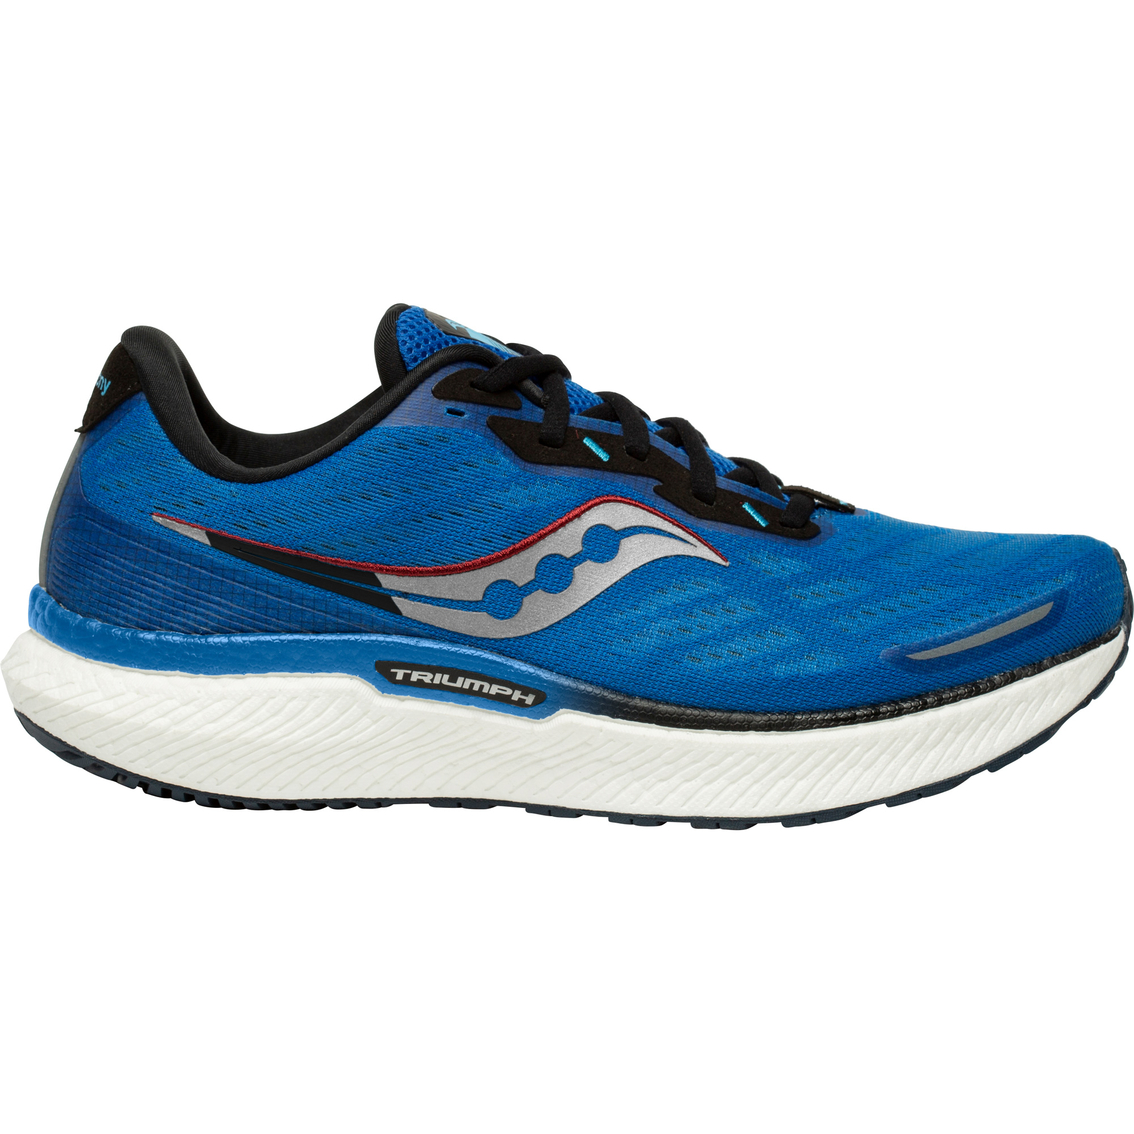 Saucony Men's Triumph 19 Running Shoes | Men's Athletic Shoes | Shoes ...